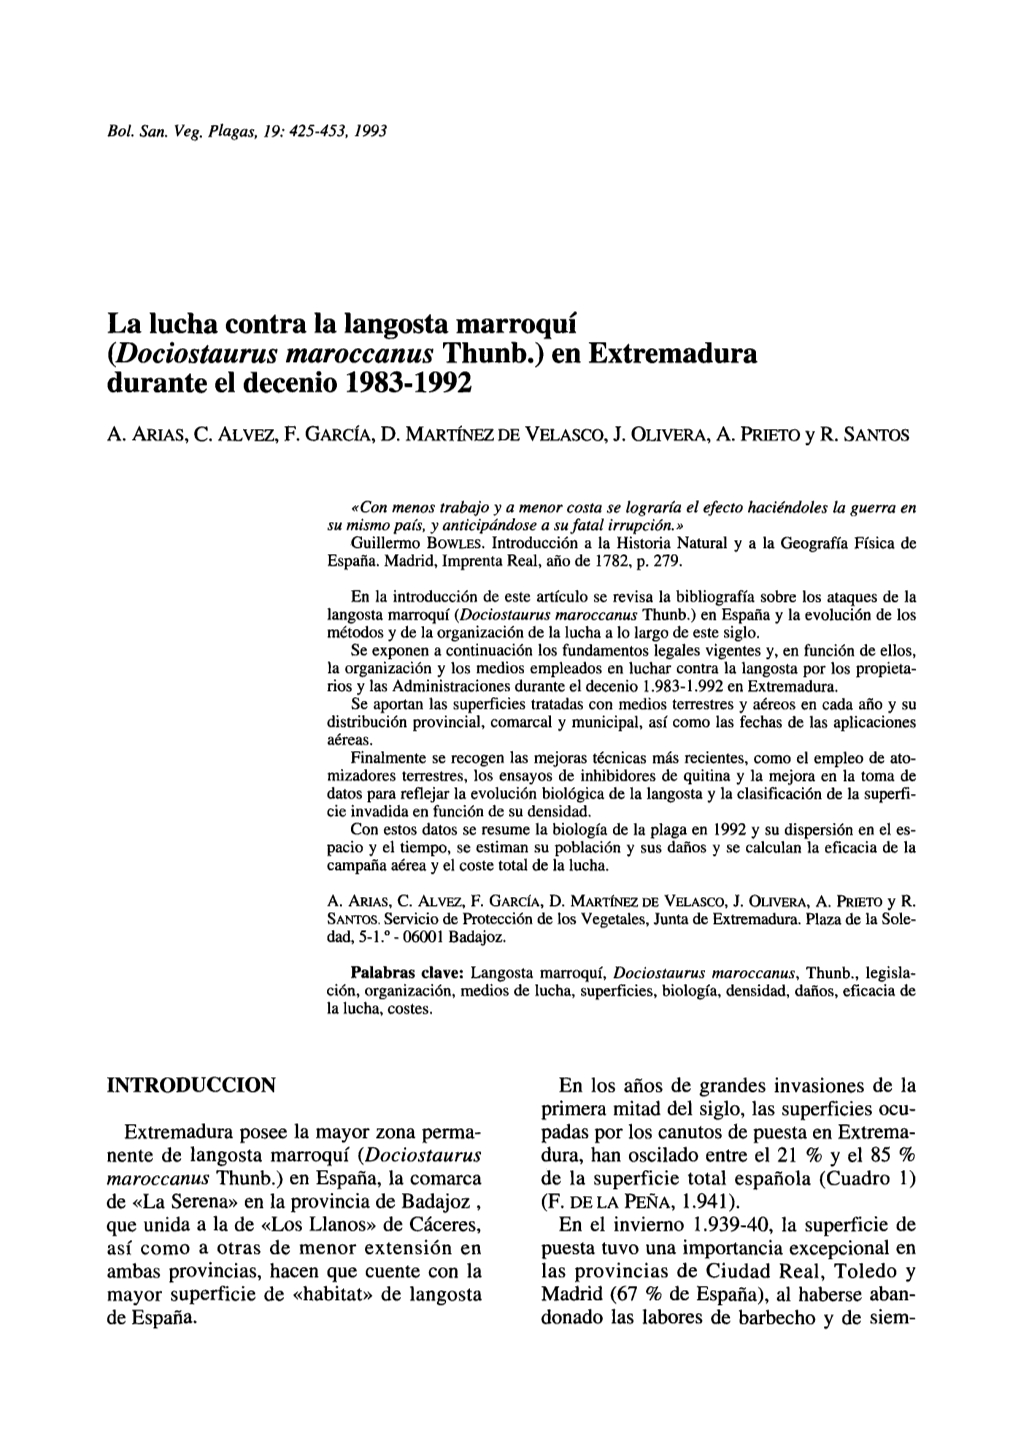 La Lucha Contra La Langosta Marroquí (Dociostaurus Maroccanus Thunb.) En Extremadura Durante El Decenio 1983-1992